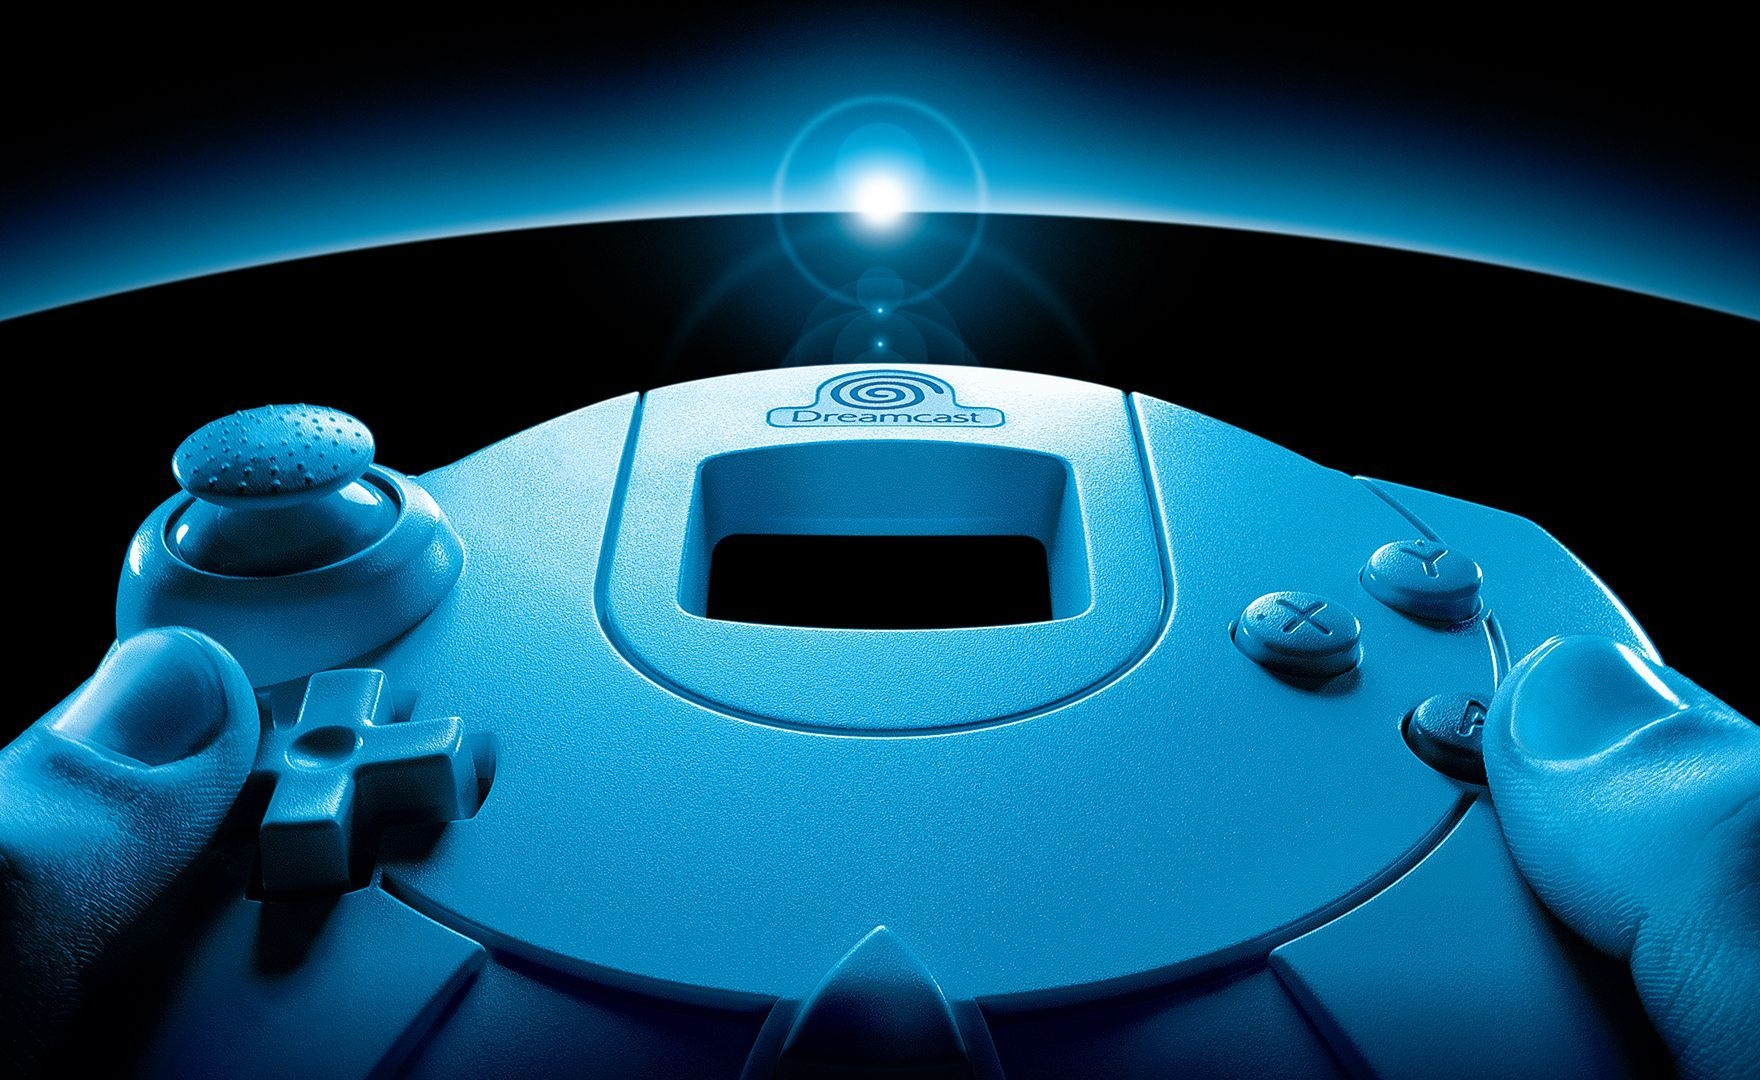 Dreamcast moddato diventa un vero e proprio mini PC da gaming